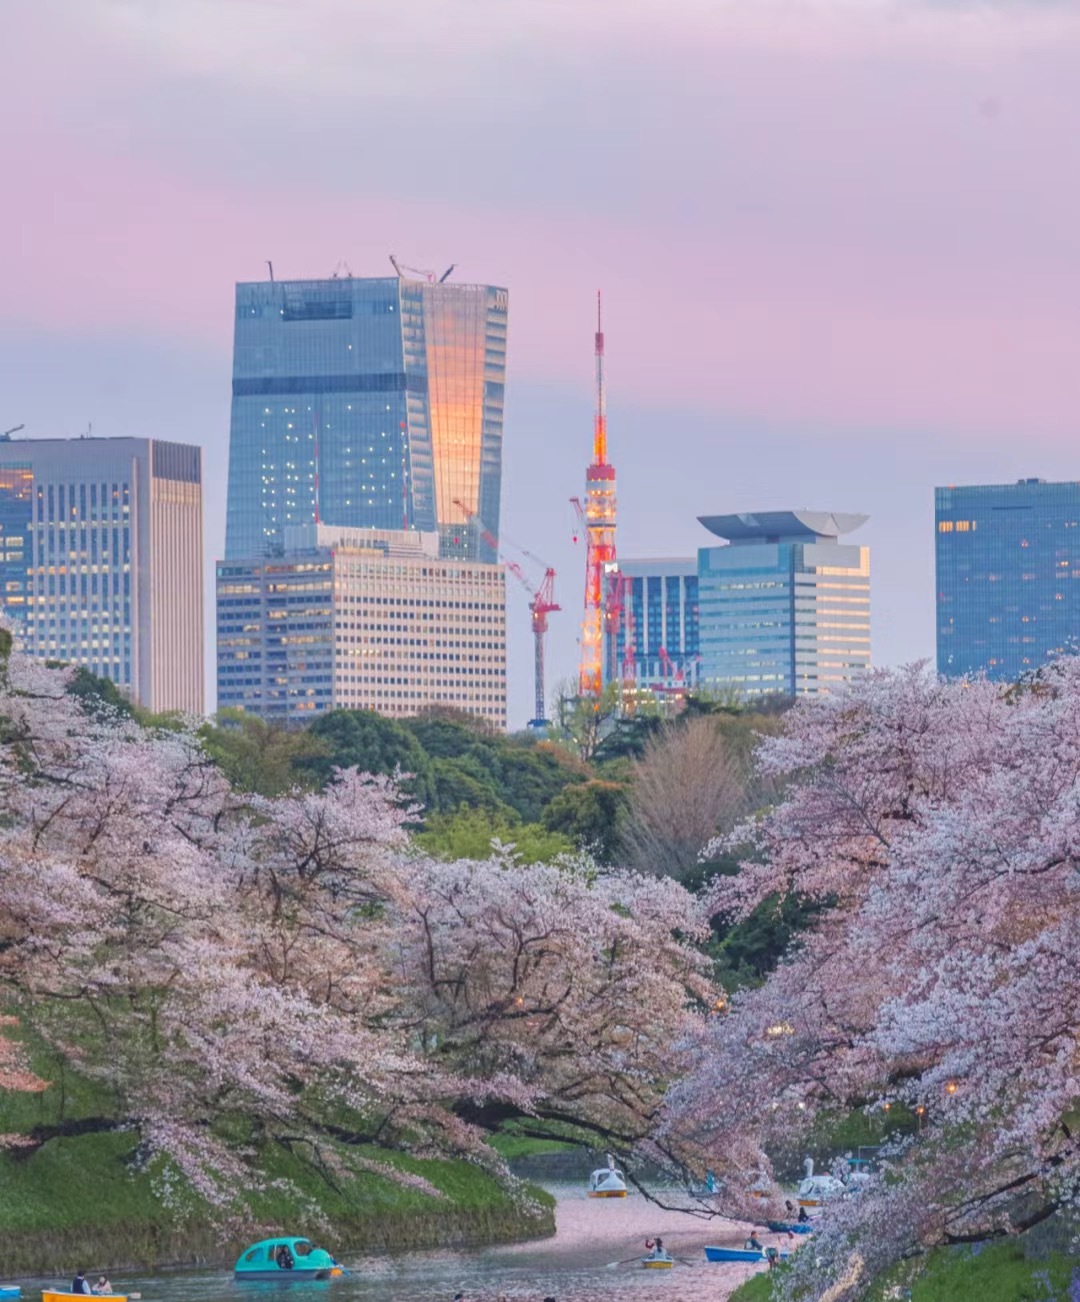 日本樱花服务器图片